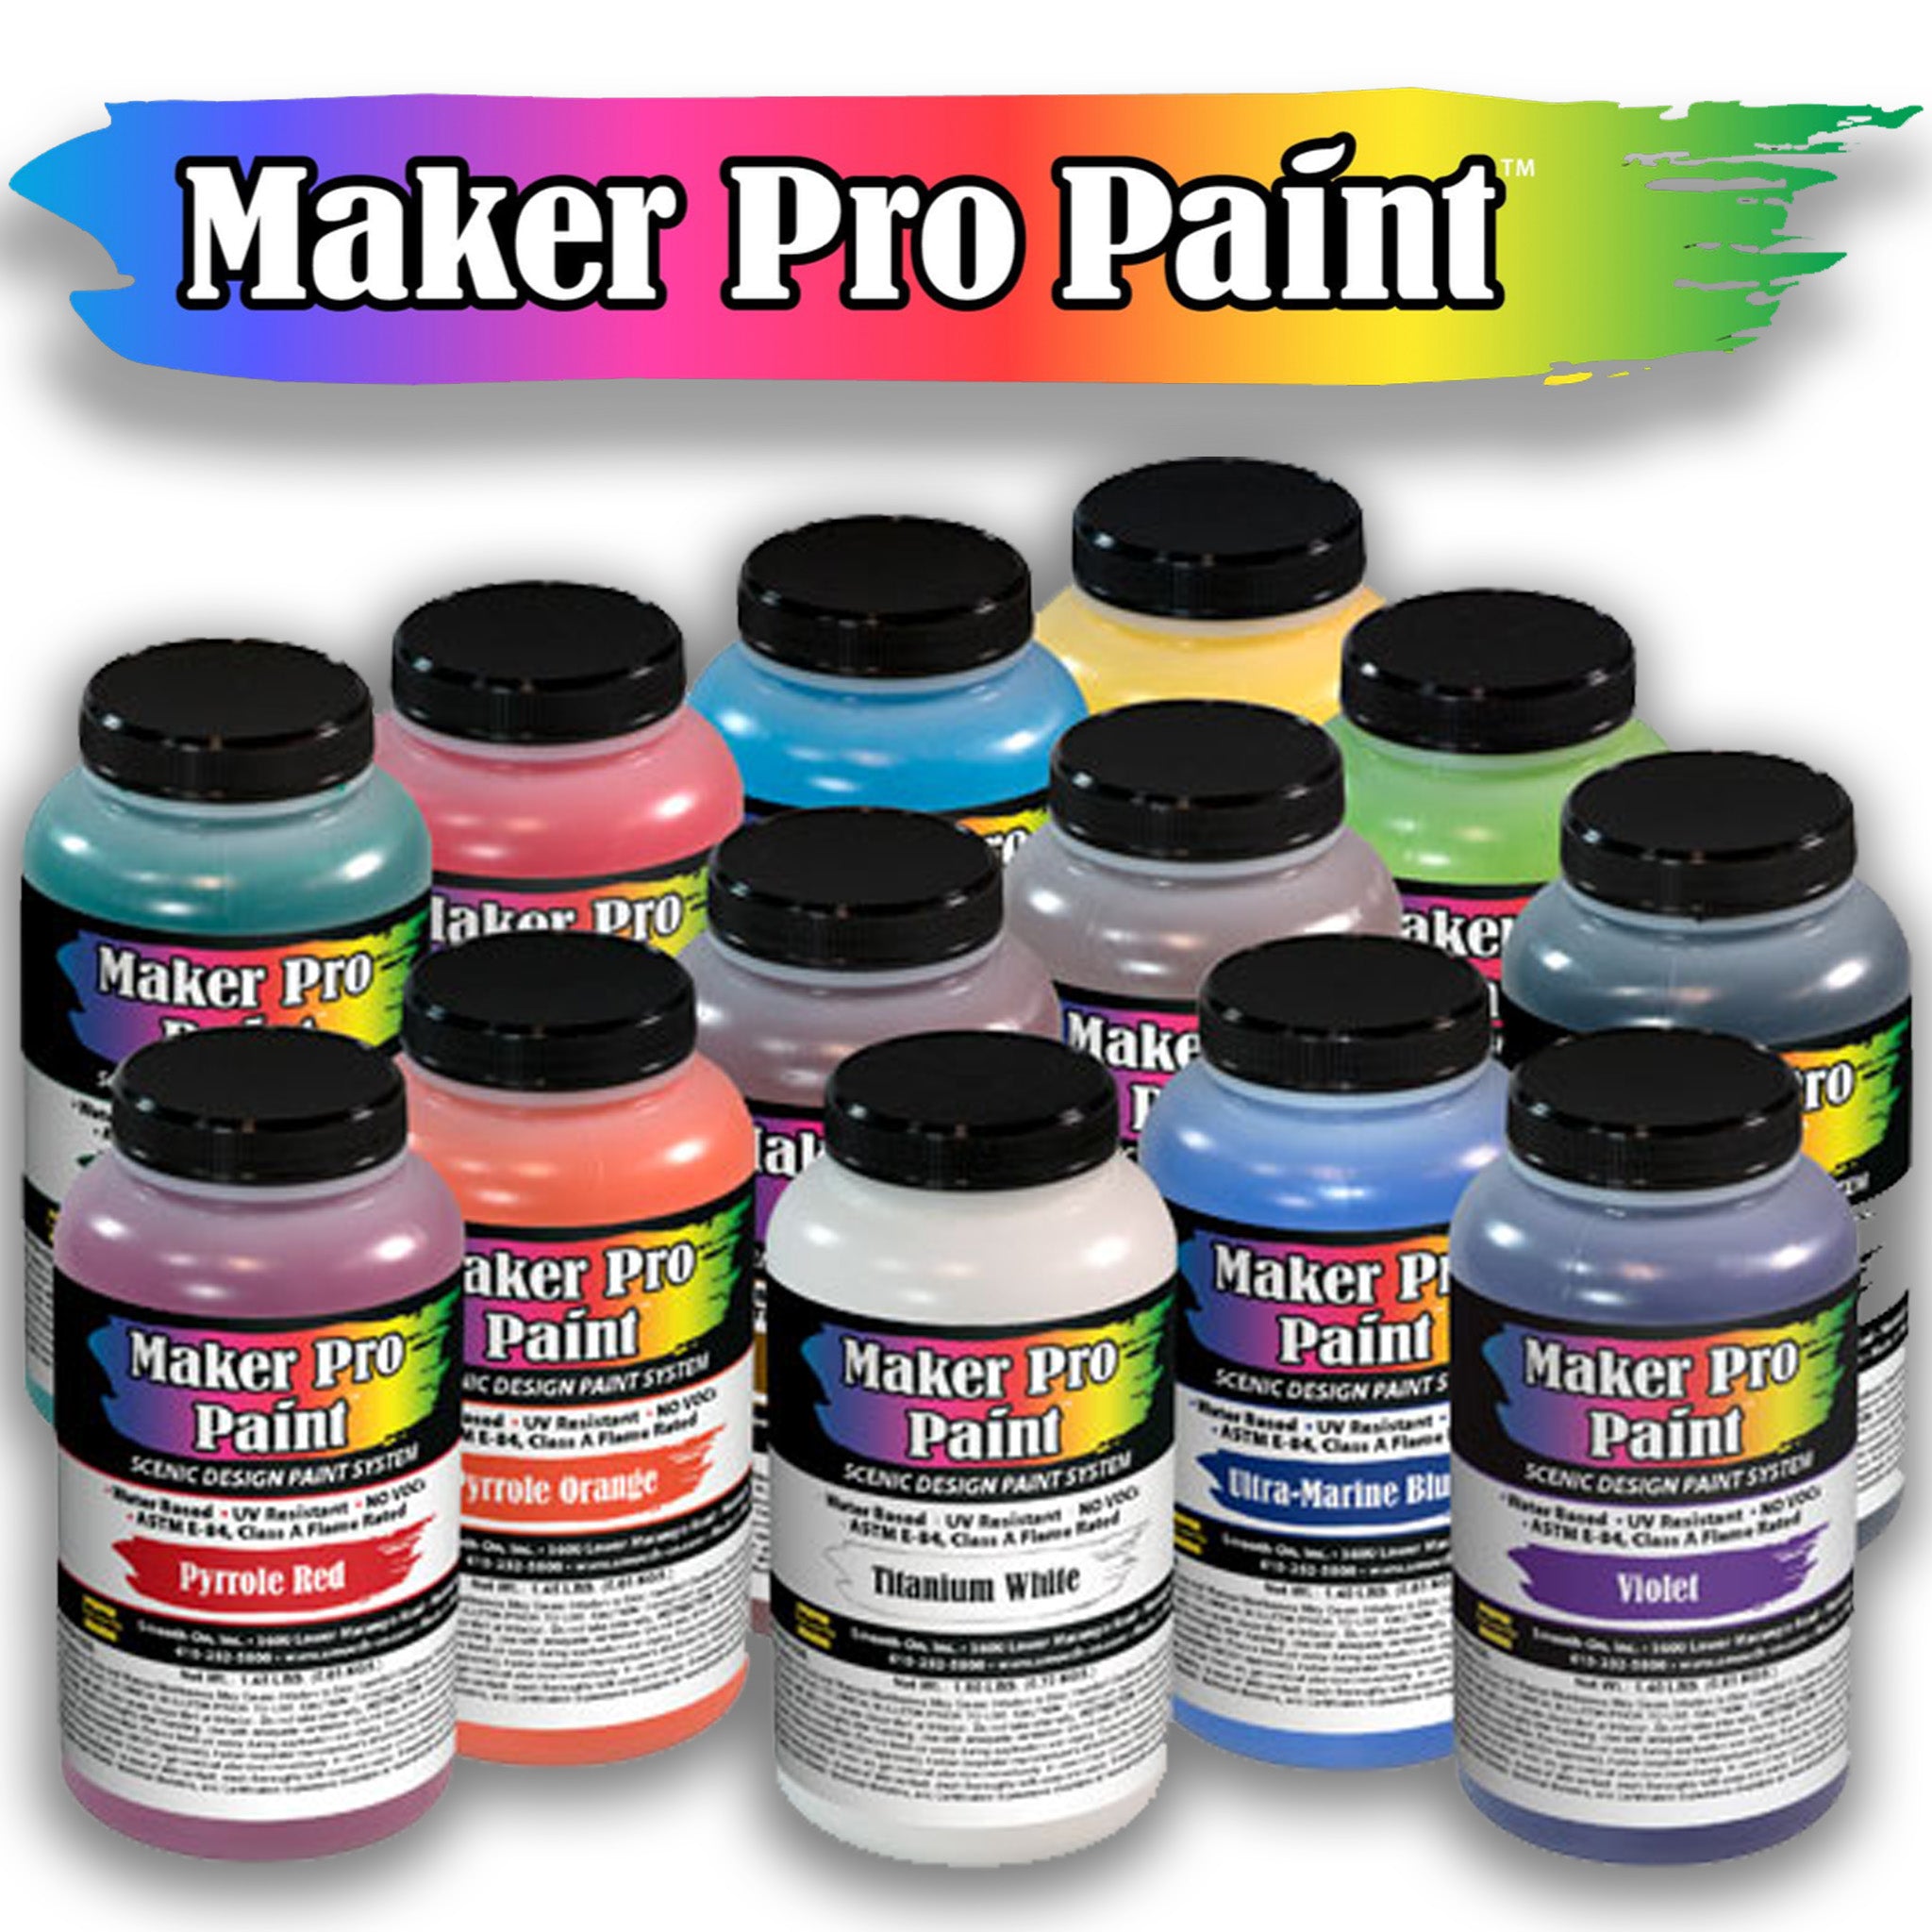 Maker Pro Scenic Design Paints